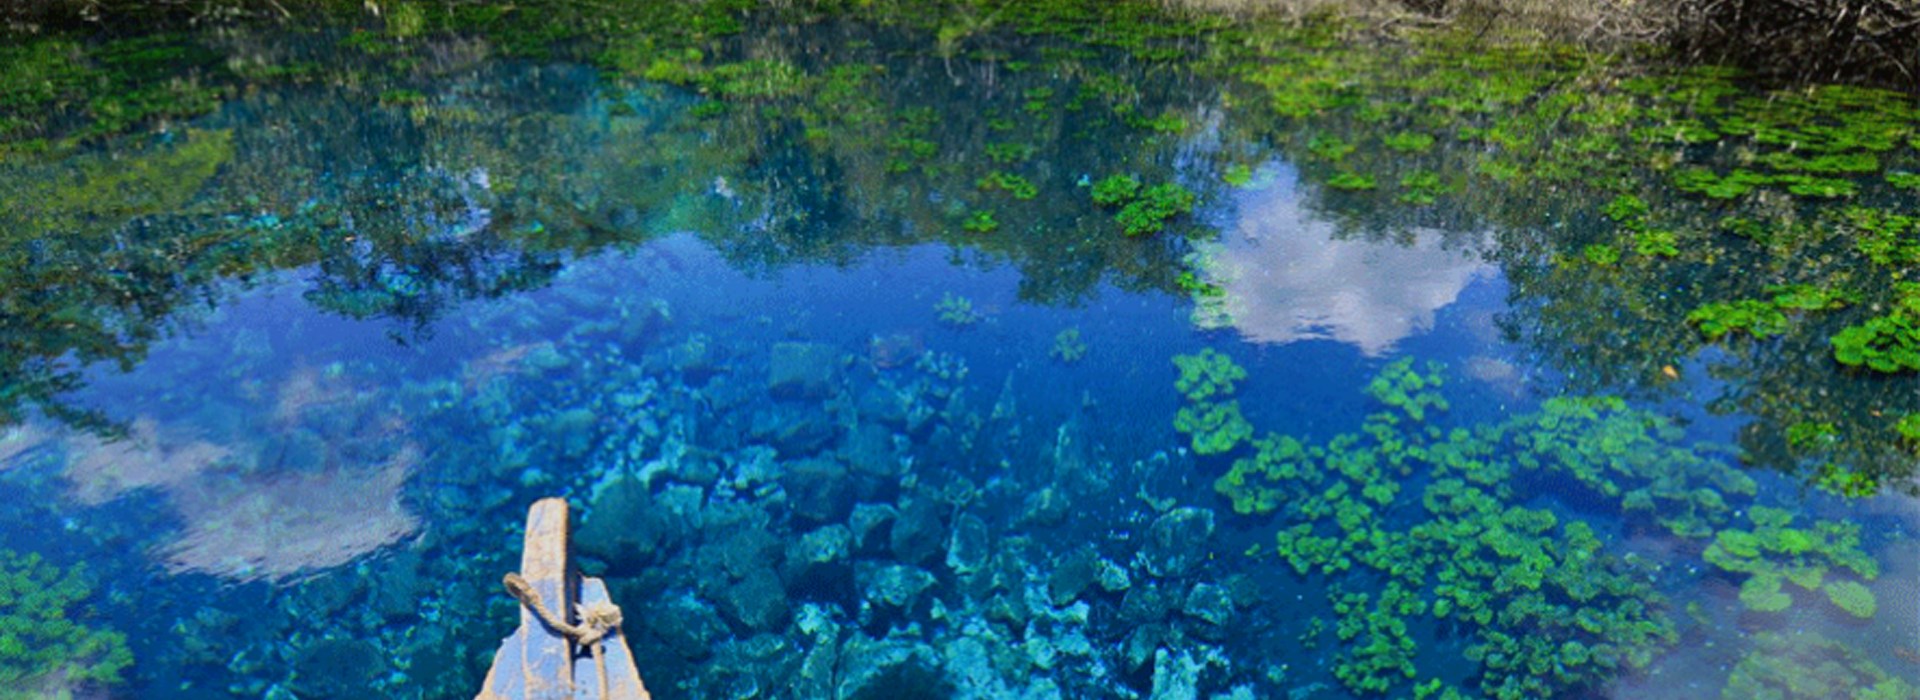 Visiter La Cenote Crater Azul - Guatemala